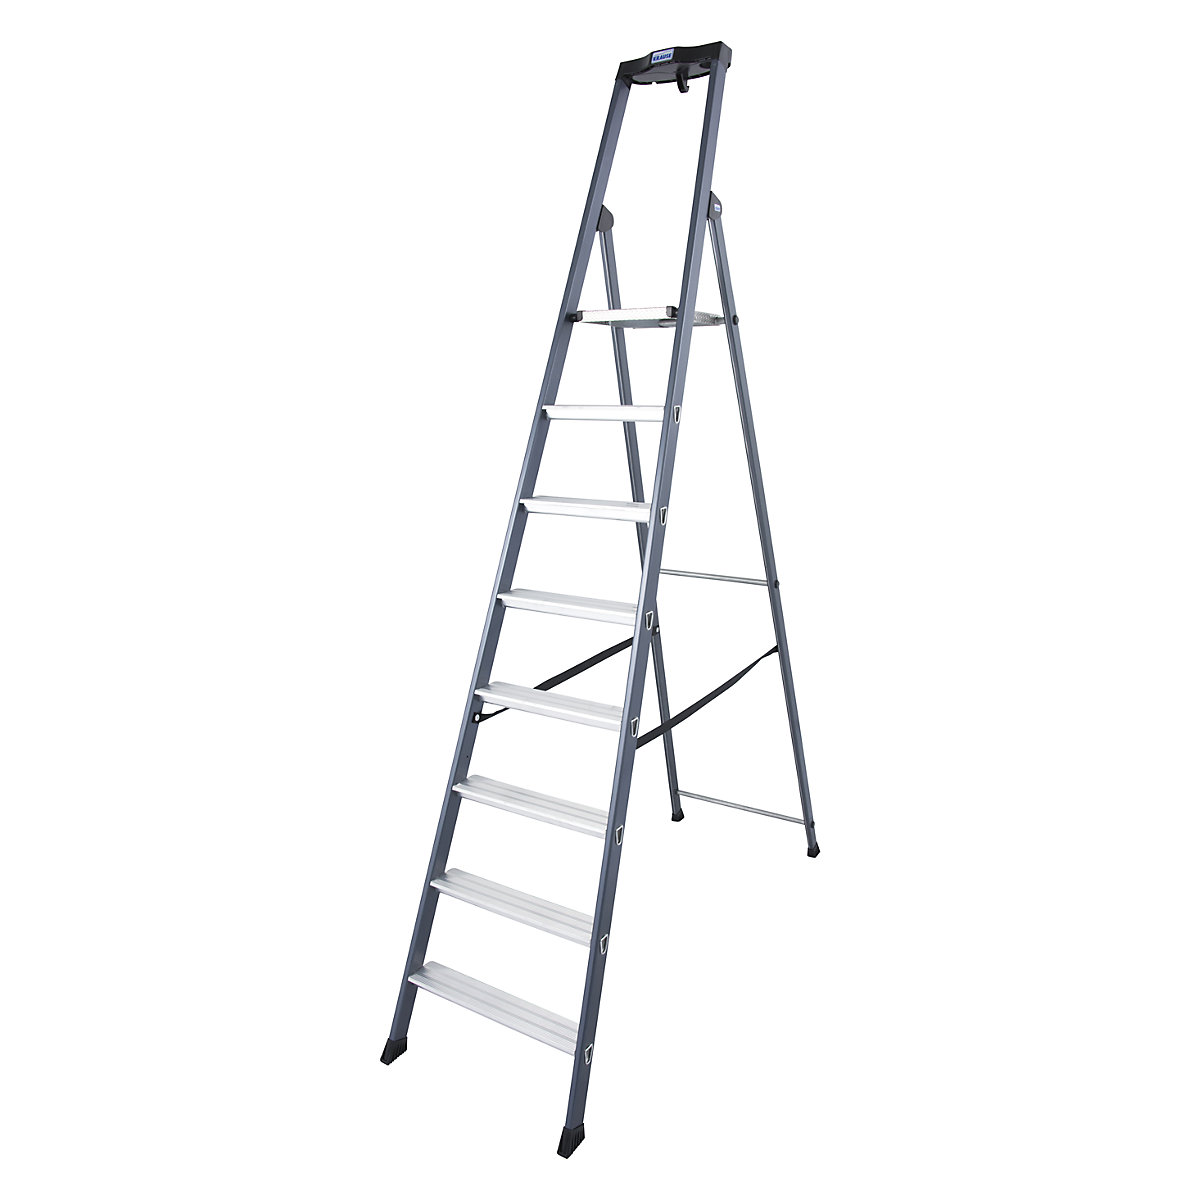 Aluminijasta dvokraka lestev s stopnicami – KRAUSE, eloksirana, 8 stopnic-6